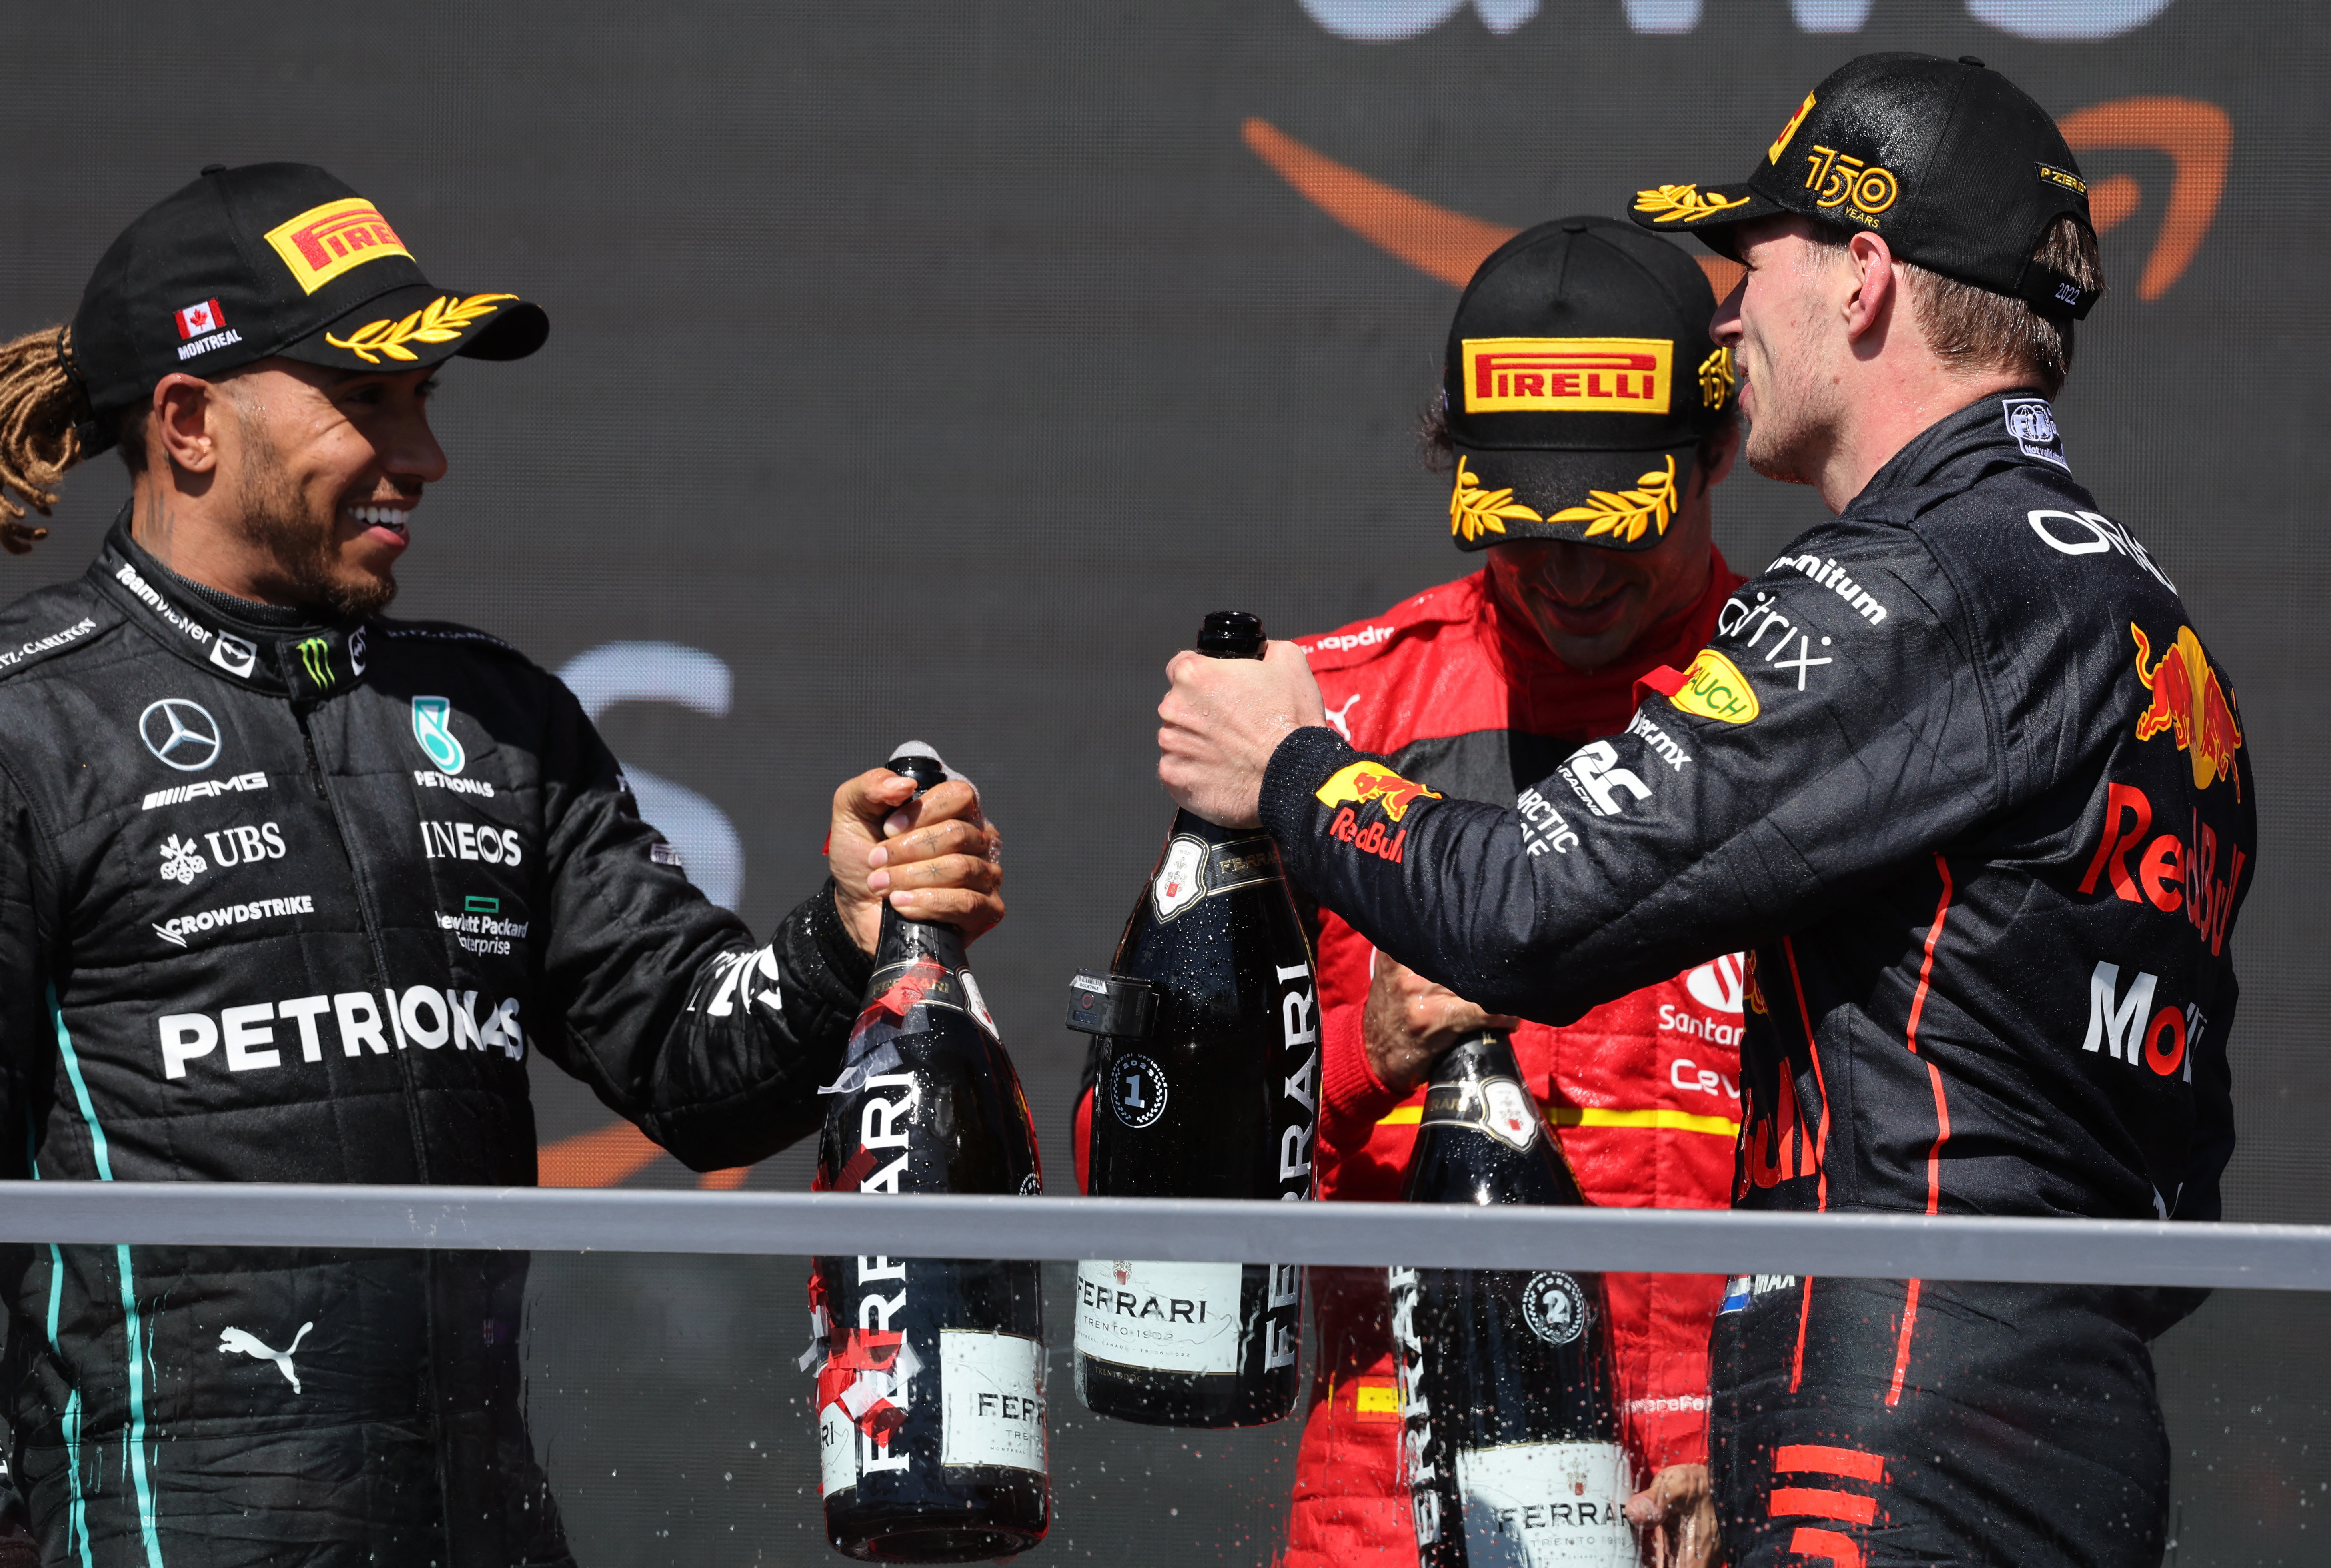 Max Verstappen saluda a Lewis Hamilton, que cumplió una buena labor y volvió a subir al podio luego de ocho fechas. Segundo fue Carlos Sainz Jr. (REUTERS/Chris Helgren)